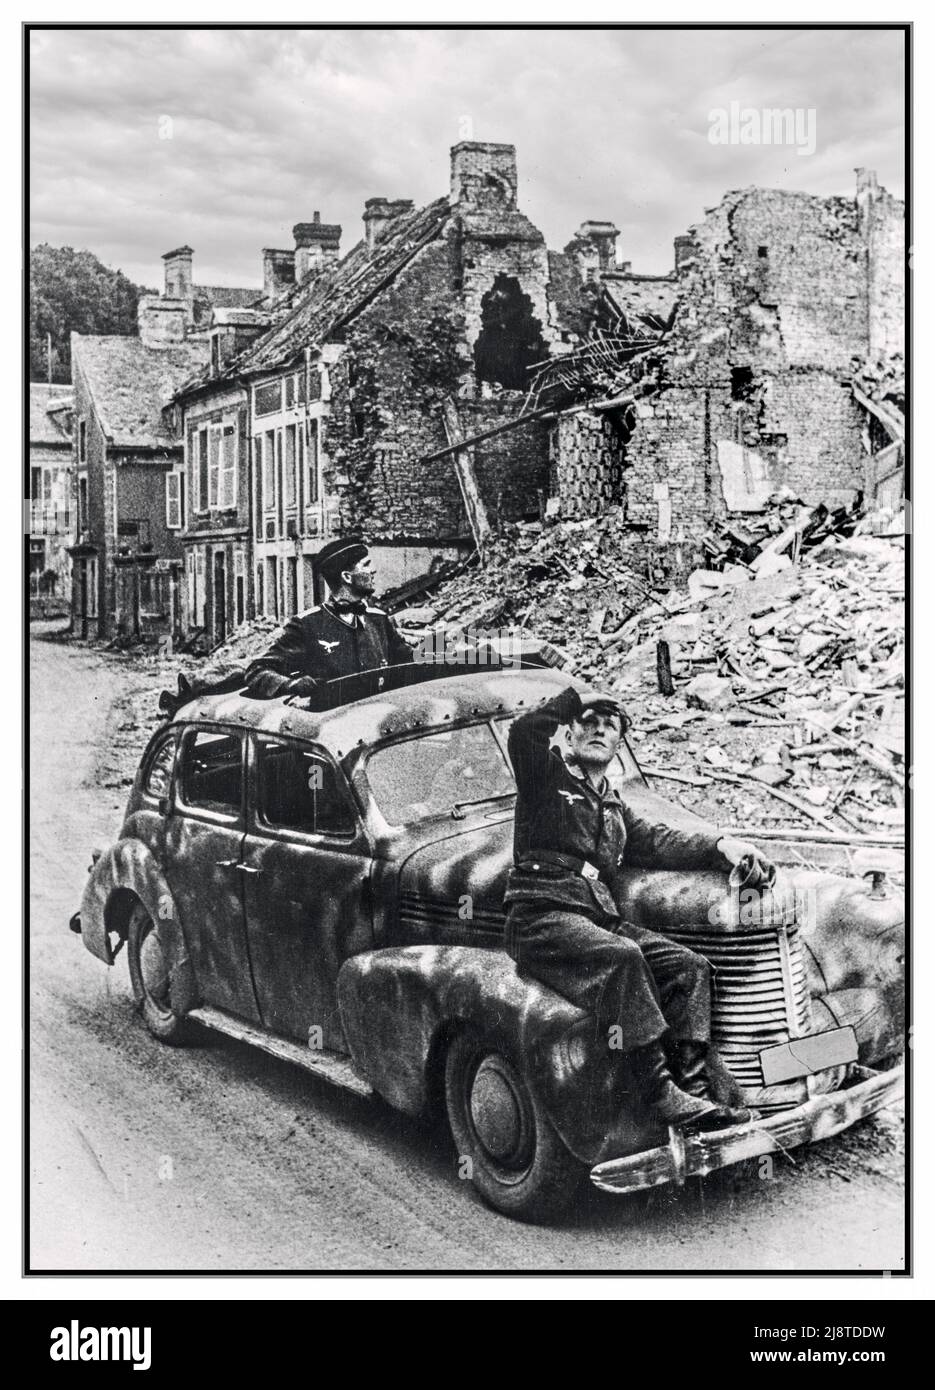 D-Day-Rückzugsort in einem getarnten Opel-Dienstwagen des Kapitans, bei dem drei deutsche Wehrmachtssoldaten der Nazis vor Angriffen der Alliierten aufpassen, in den Ruinen einer Stadt in der Normandie fahren und sich zurückziehen. Operation Overlord, Landung in der Normandie D-Day Frankreich 1944. Juli Stockfoto